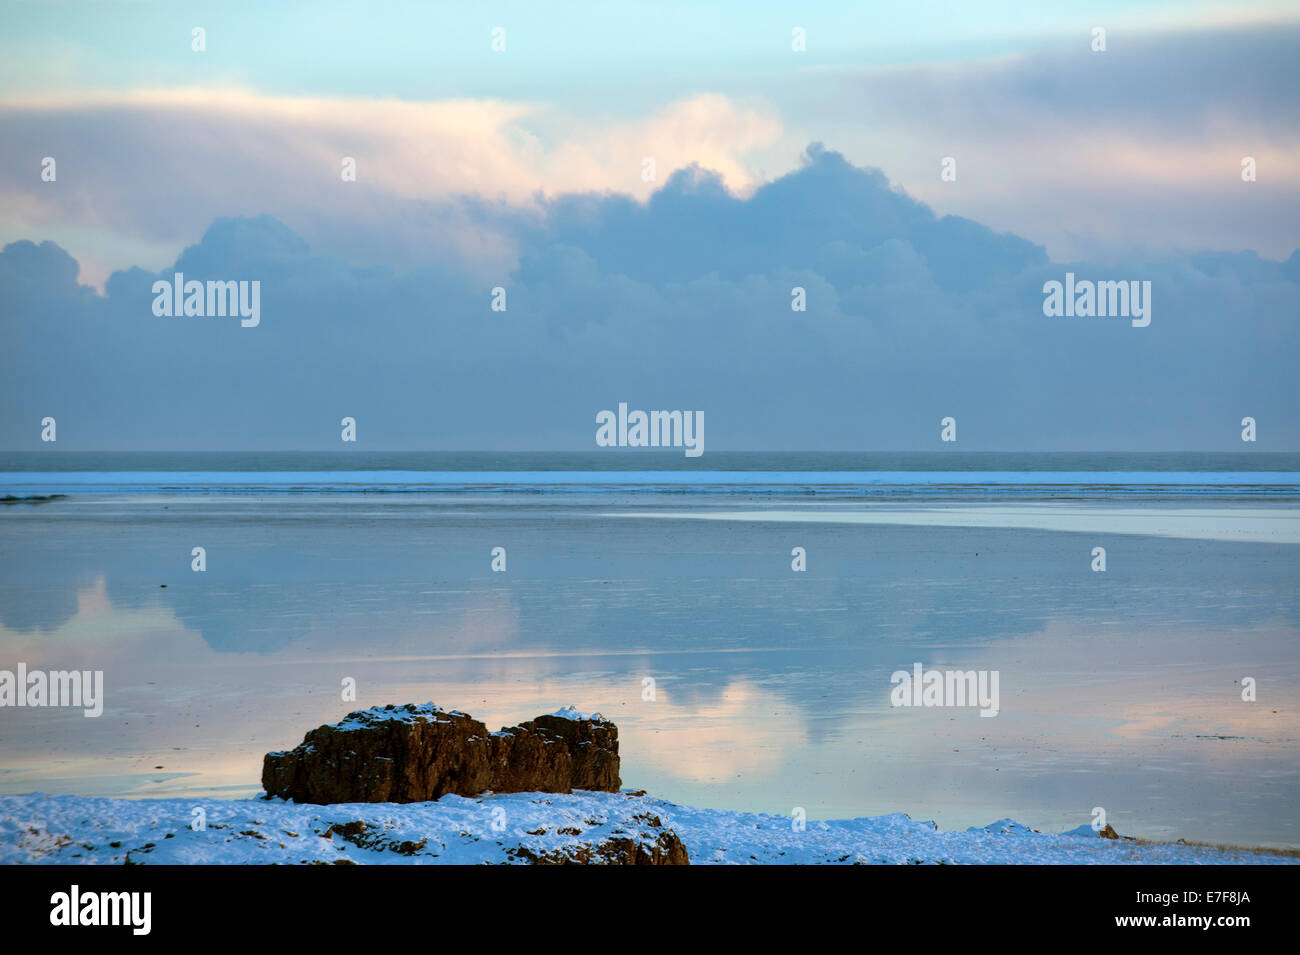 Las nubes reflejan aún en el océano en paisaje ártico Foto de stock